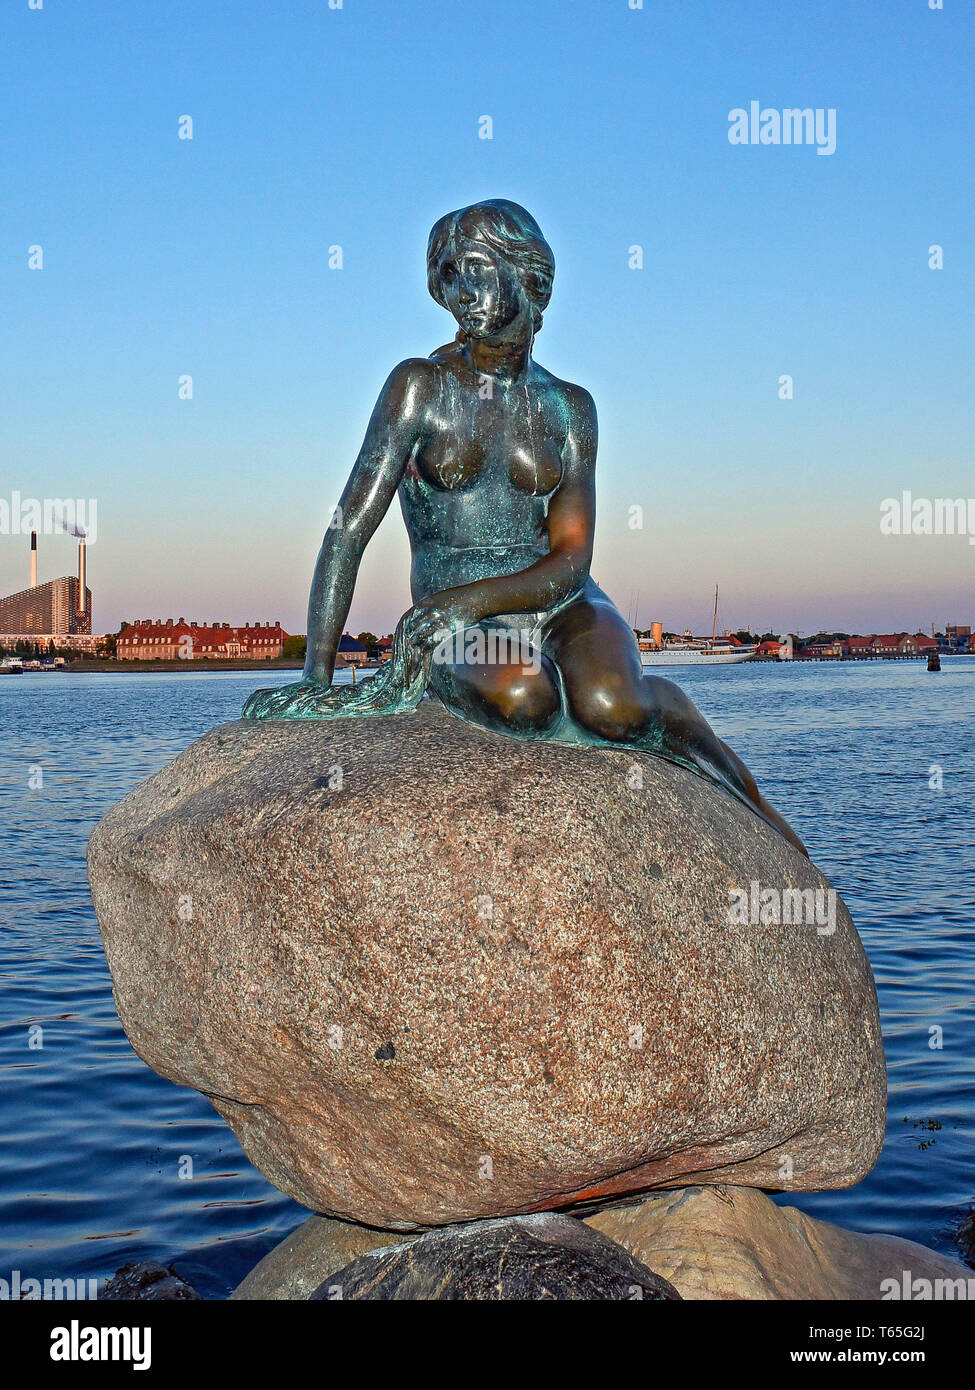 Dänemark, Kopenhagen, die Kleine Meerjungfrau ist eine Bronzestatue von Edvard Eriksen, Darstellung einer Meerjungfrau immer menschlich. Die Skulptur ist auf einem Felsen angezeigt Stockfoto